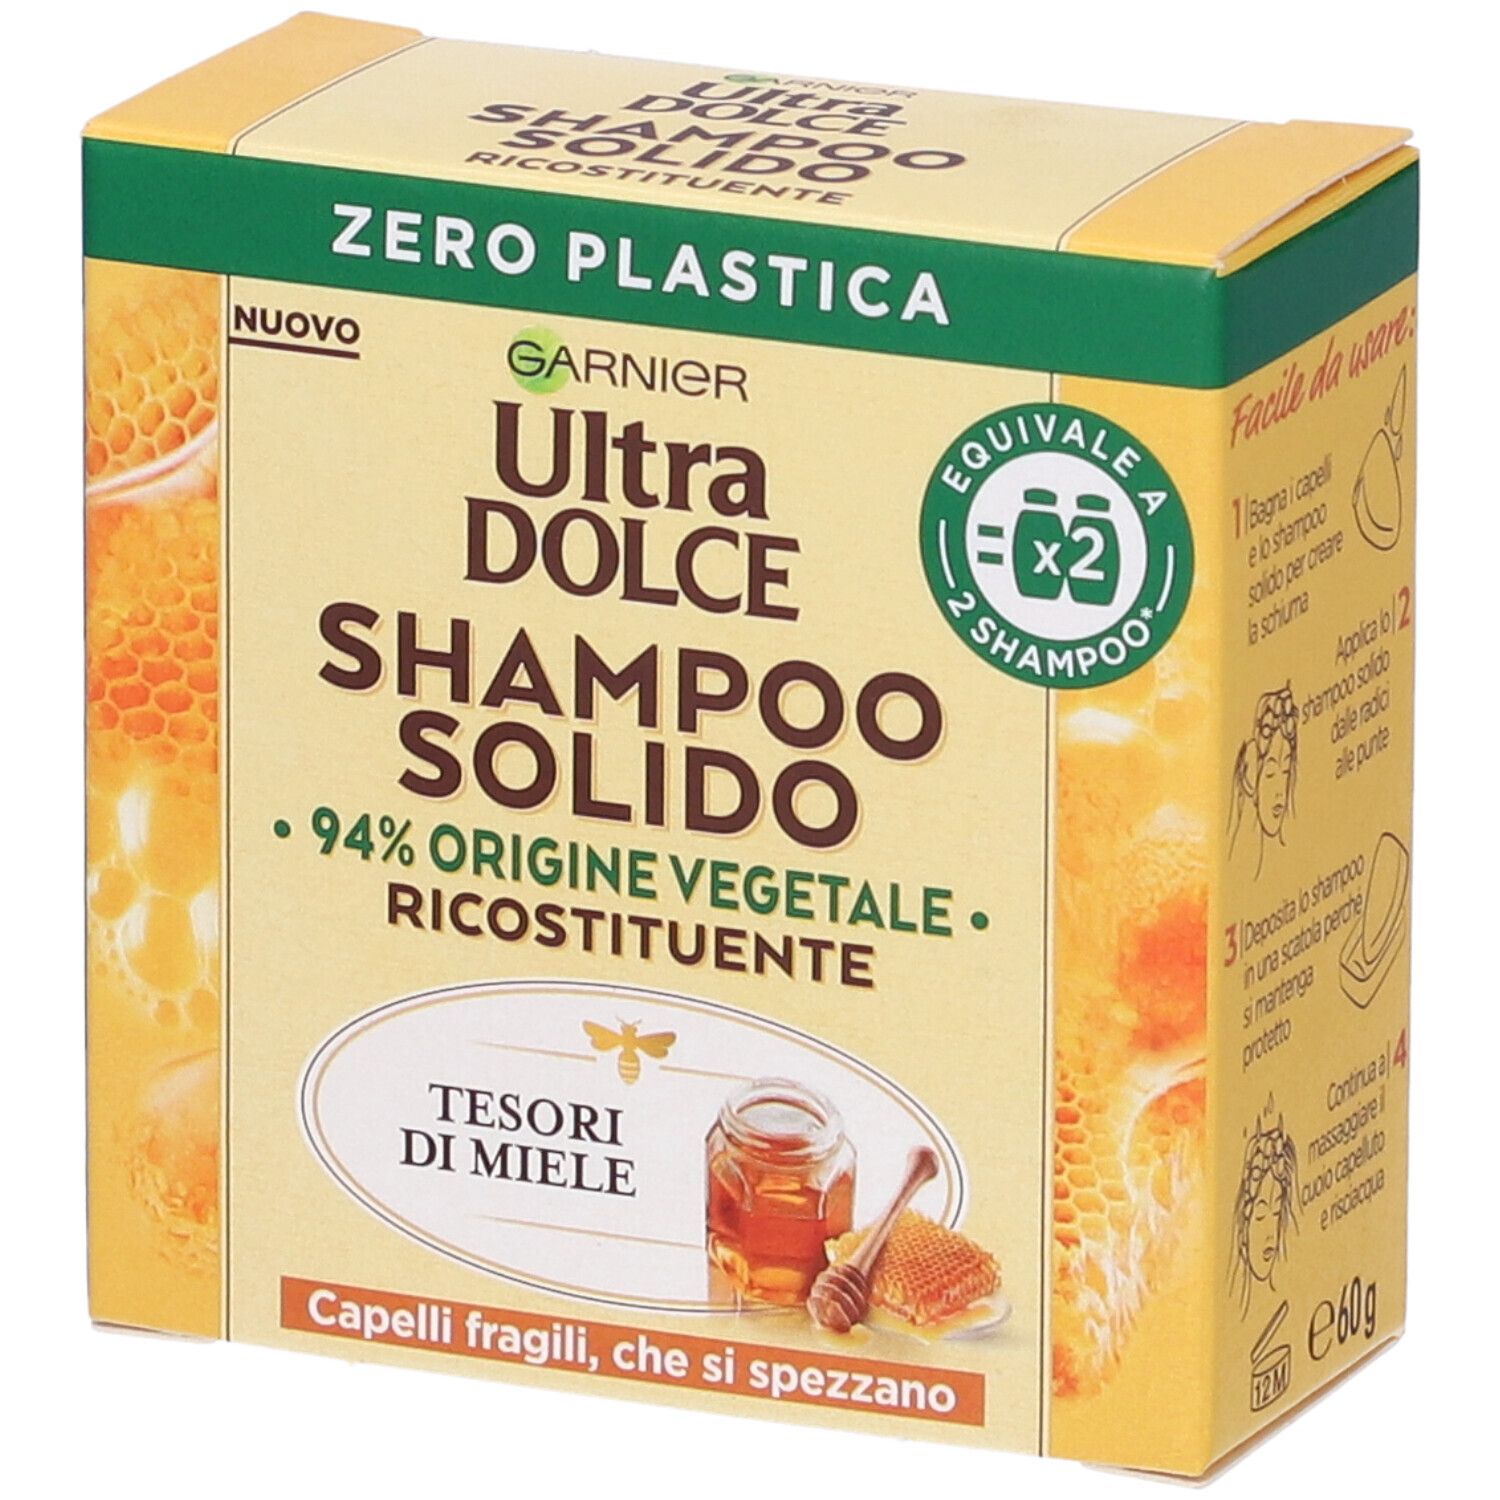 Image of Garnier Ultra Dolce Shampoo Solido Tesori di Miele, Per Capelli Fragili che si Spezzano, Con packaging 100% ecologico plastic-free, 60 gr